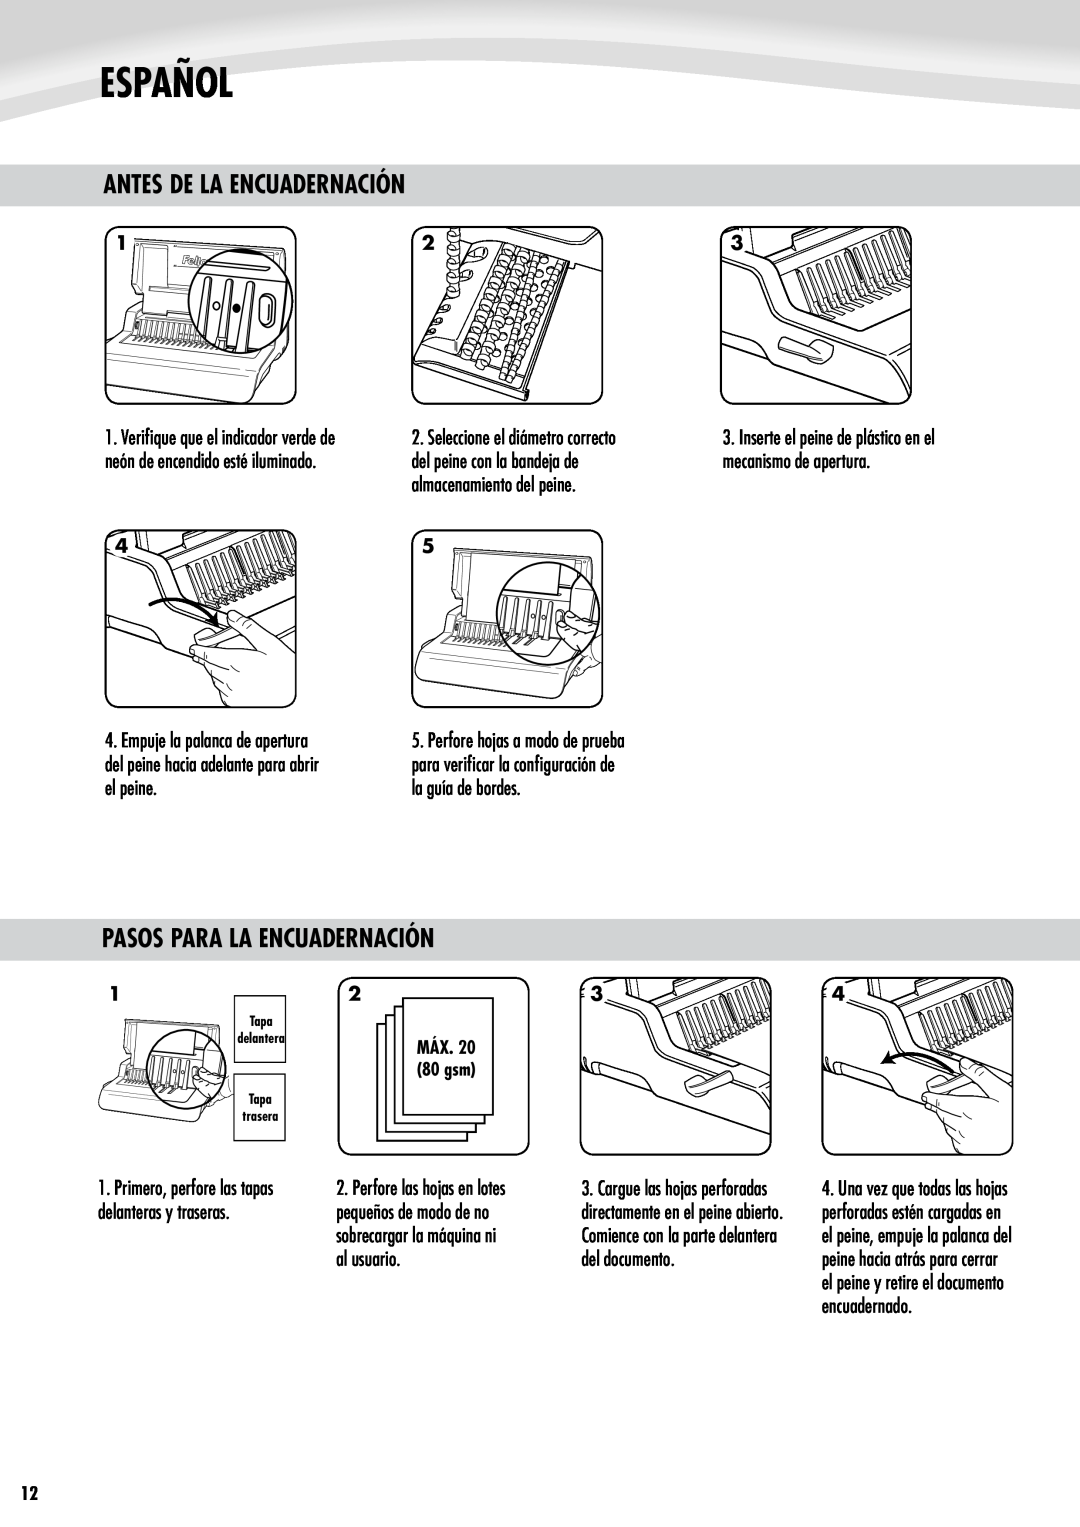 Fellowes e500 manual Antes De La Encuadernación, Pasos Para La Encuadernación, delanteras y traseras, al usuario, Español 